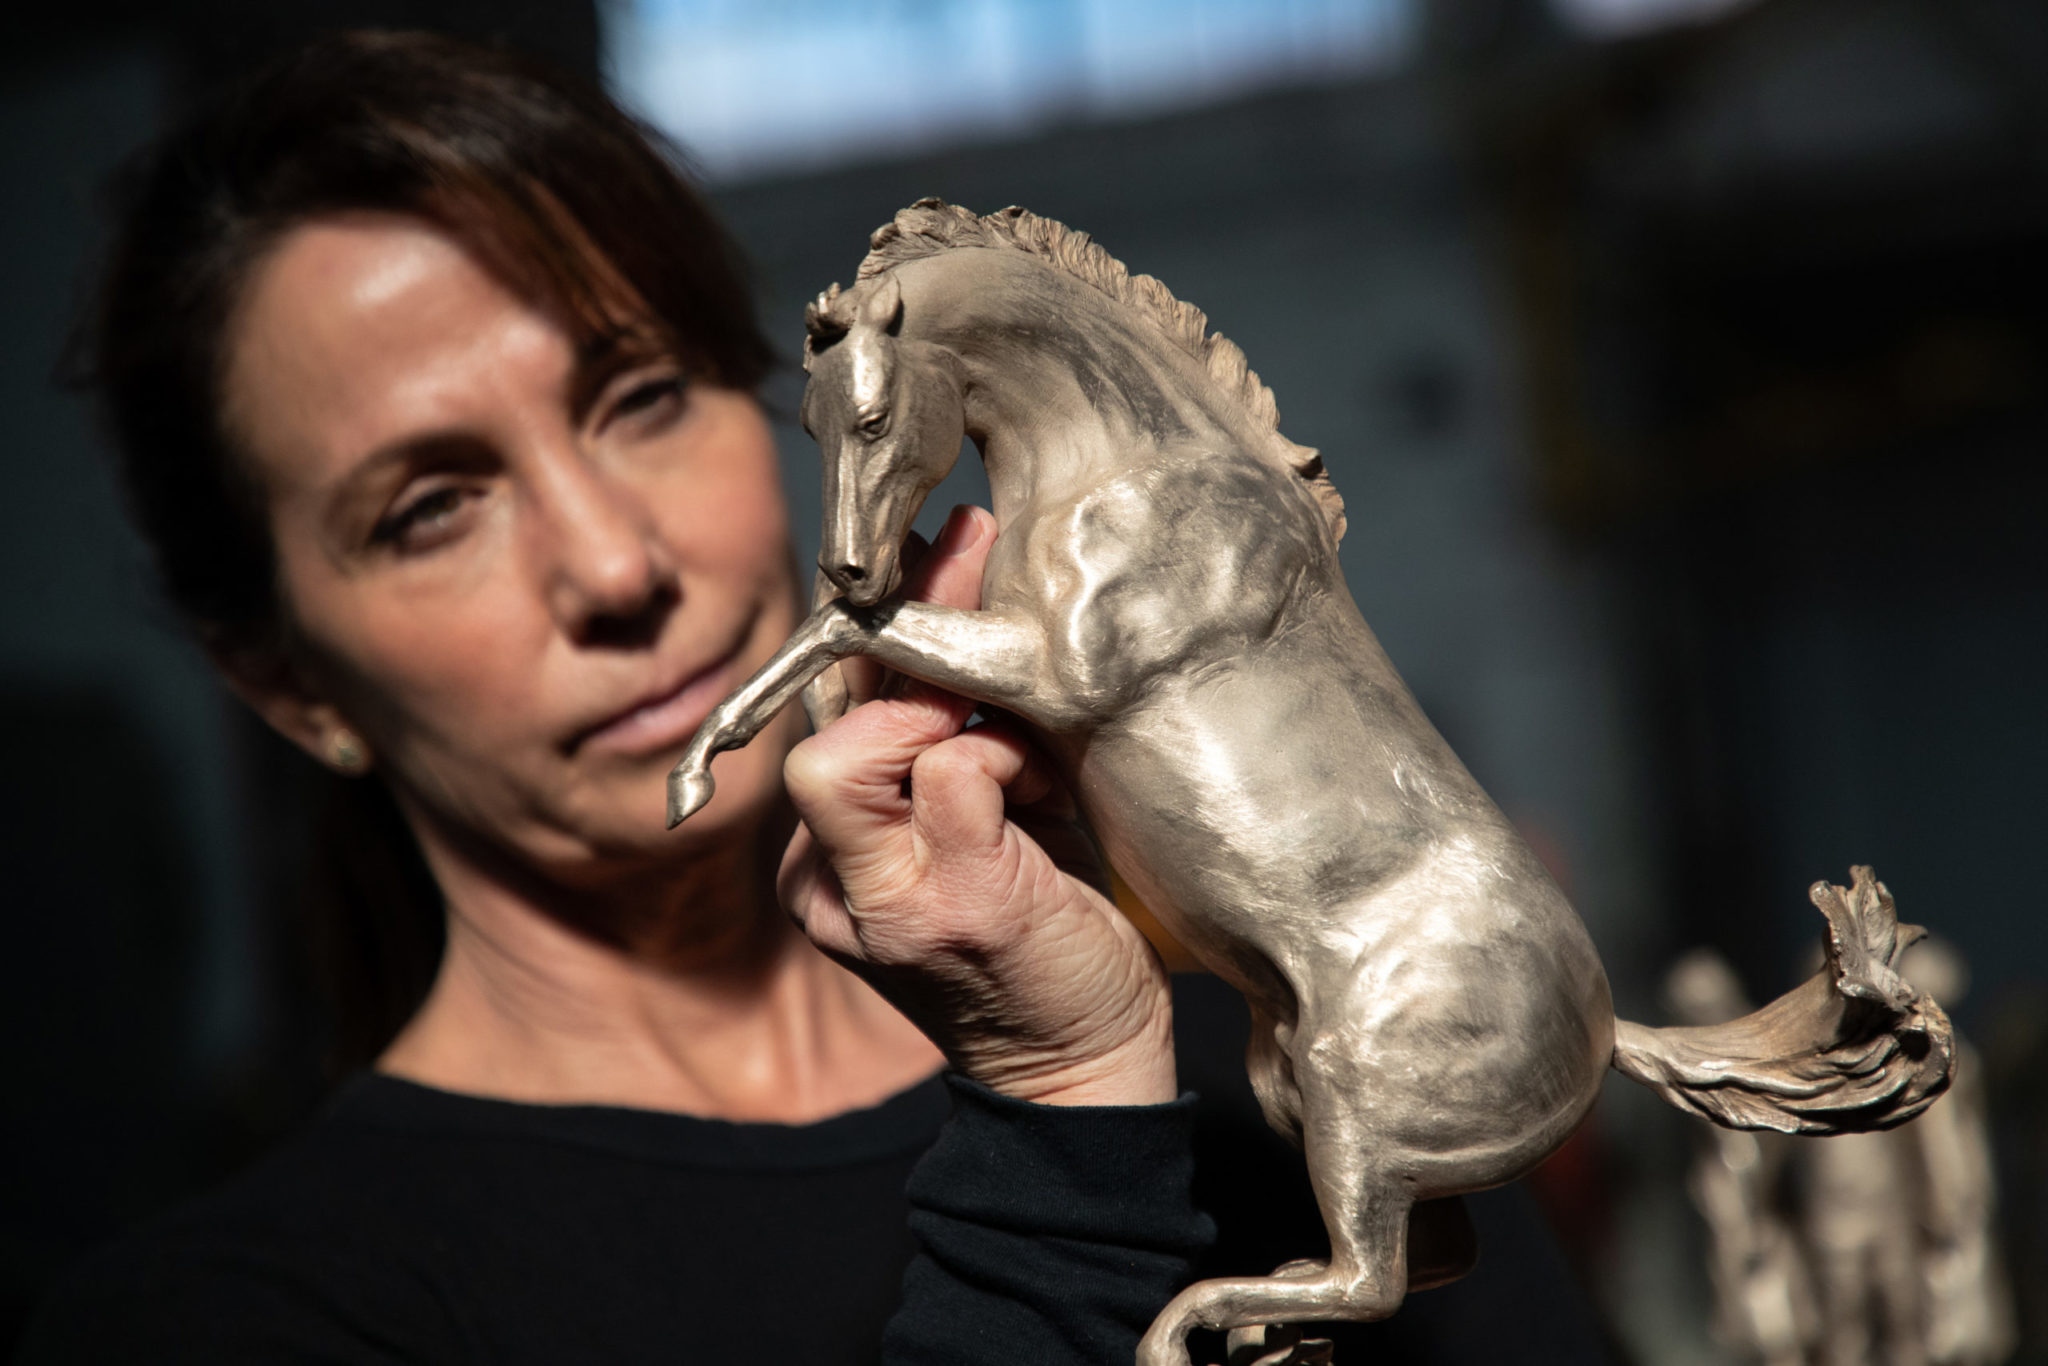 Timi Sobrato inspects sculpture